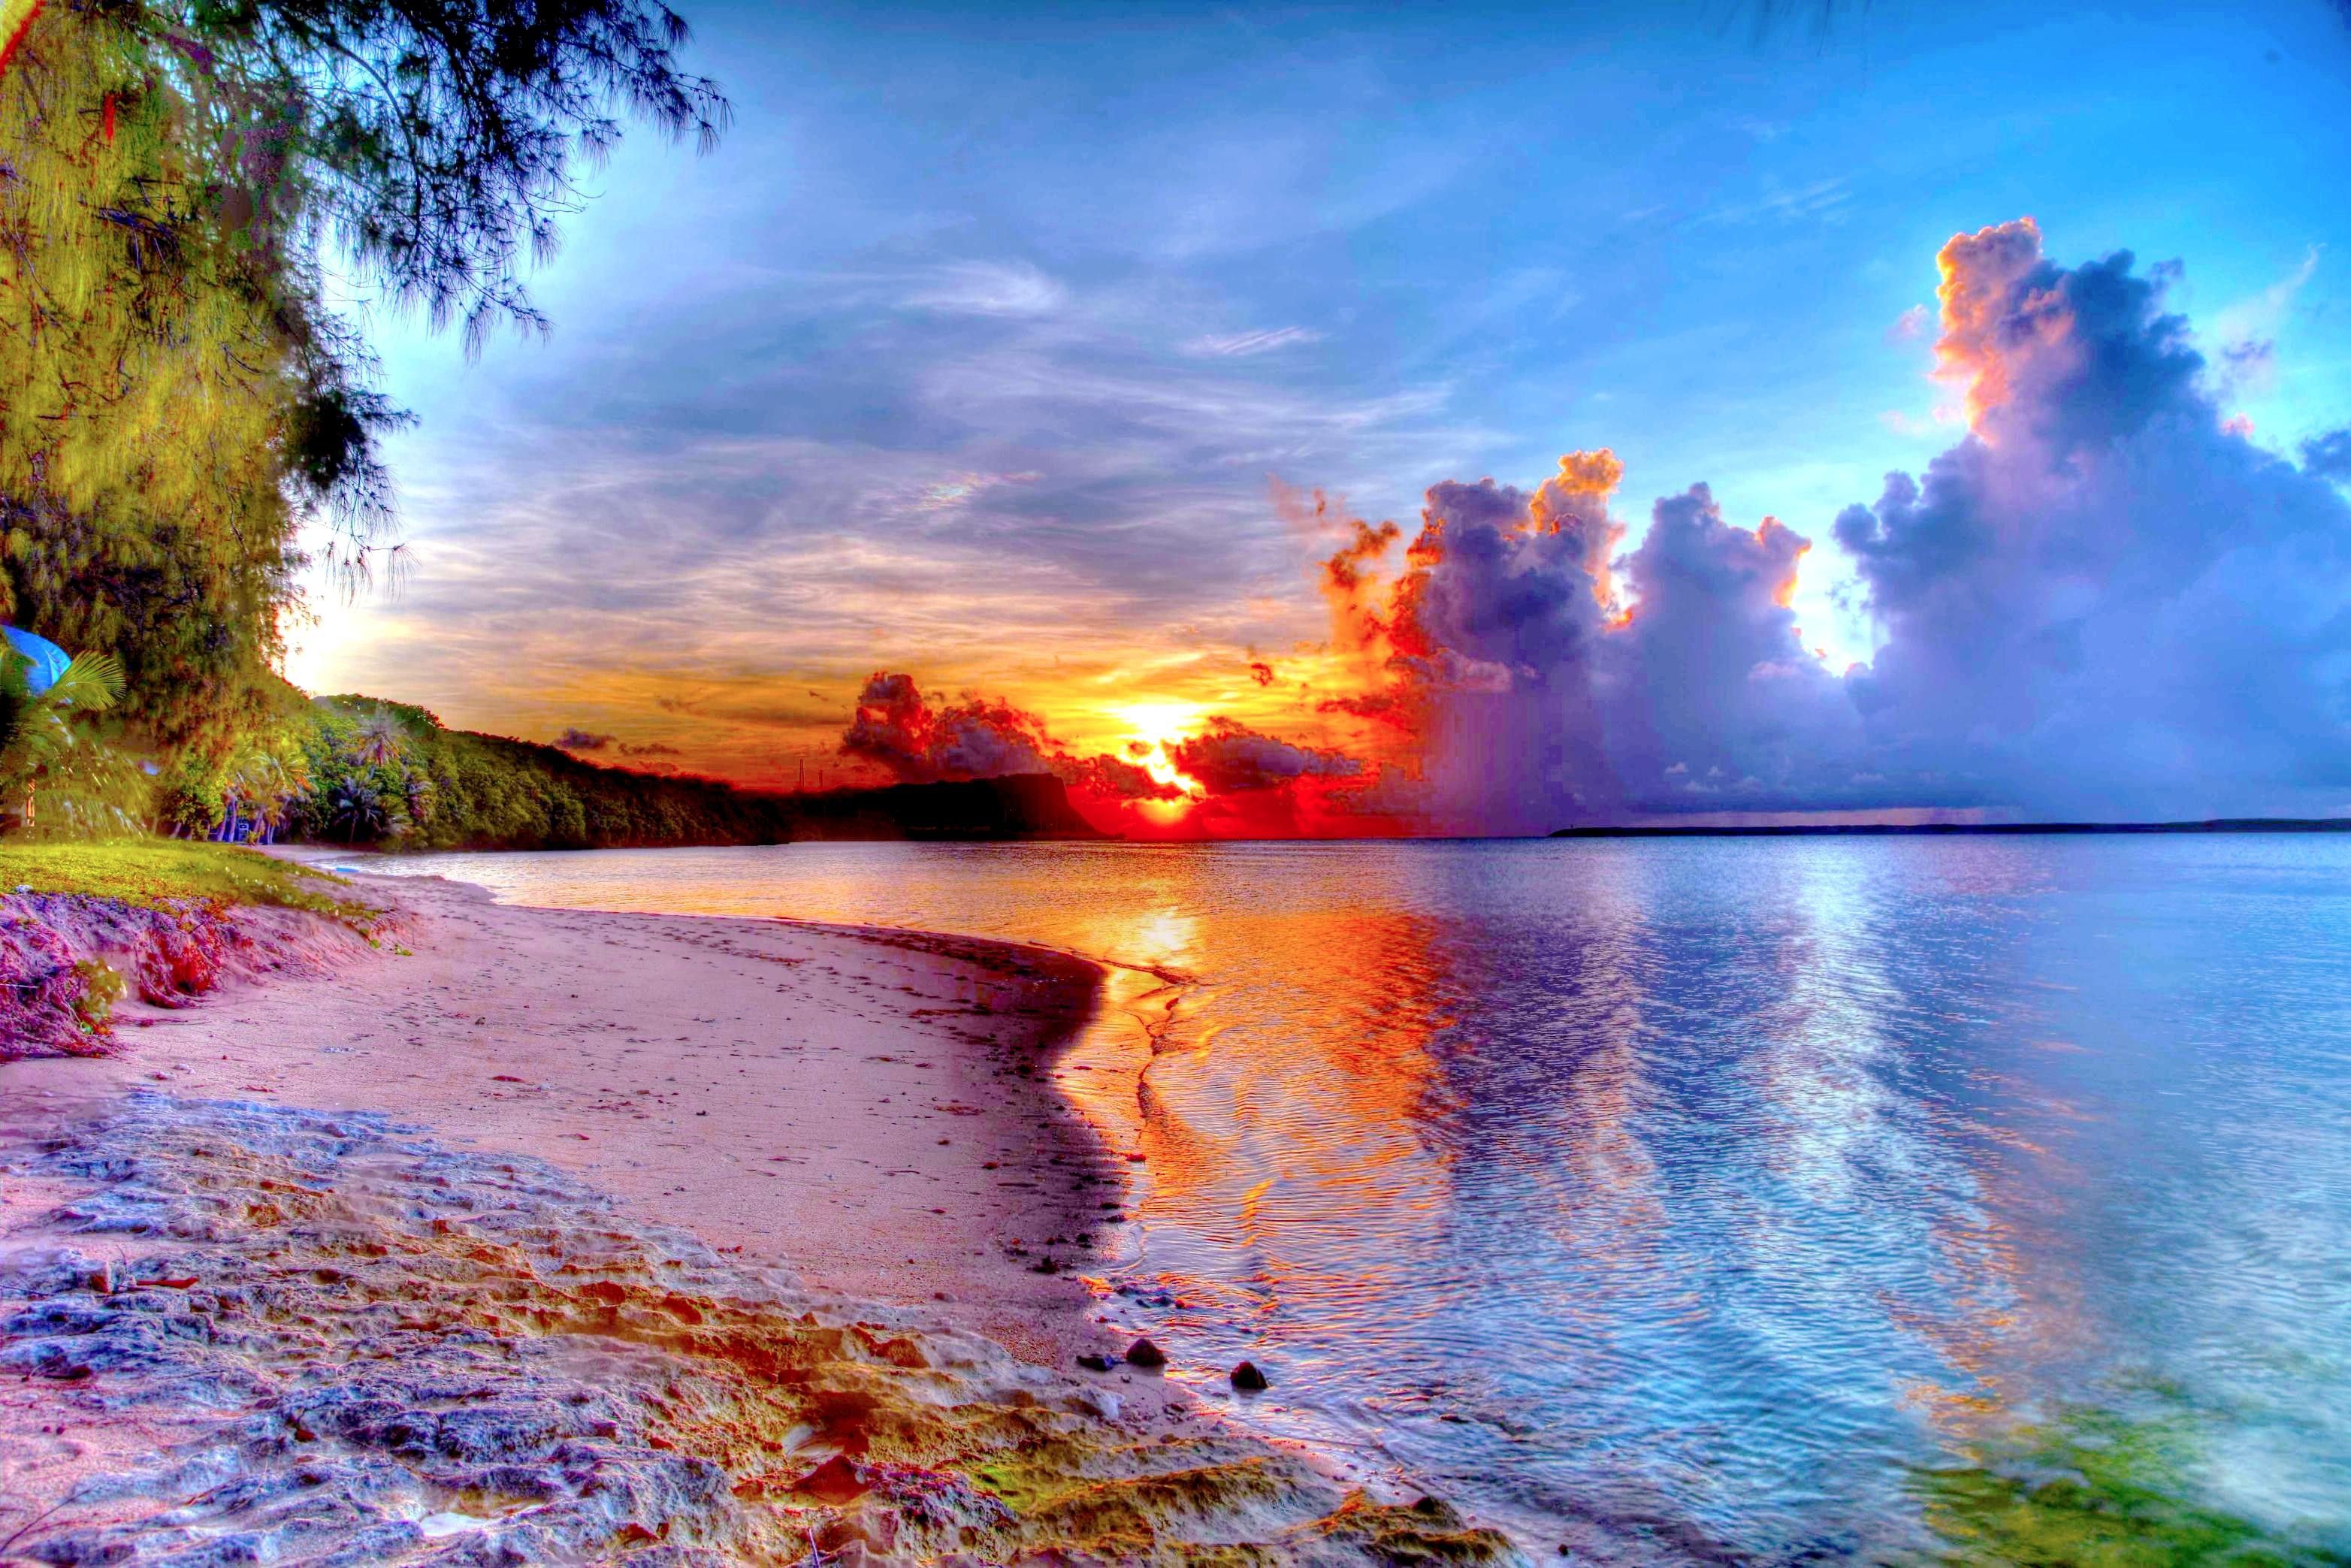 Guam Sunset Wallpapers - 4k, HD Guam Sunset Backgrounds on WallpaperBat